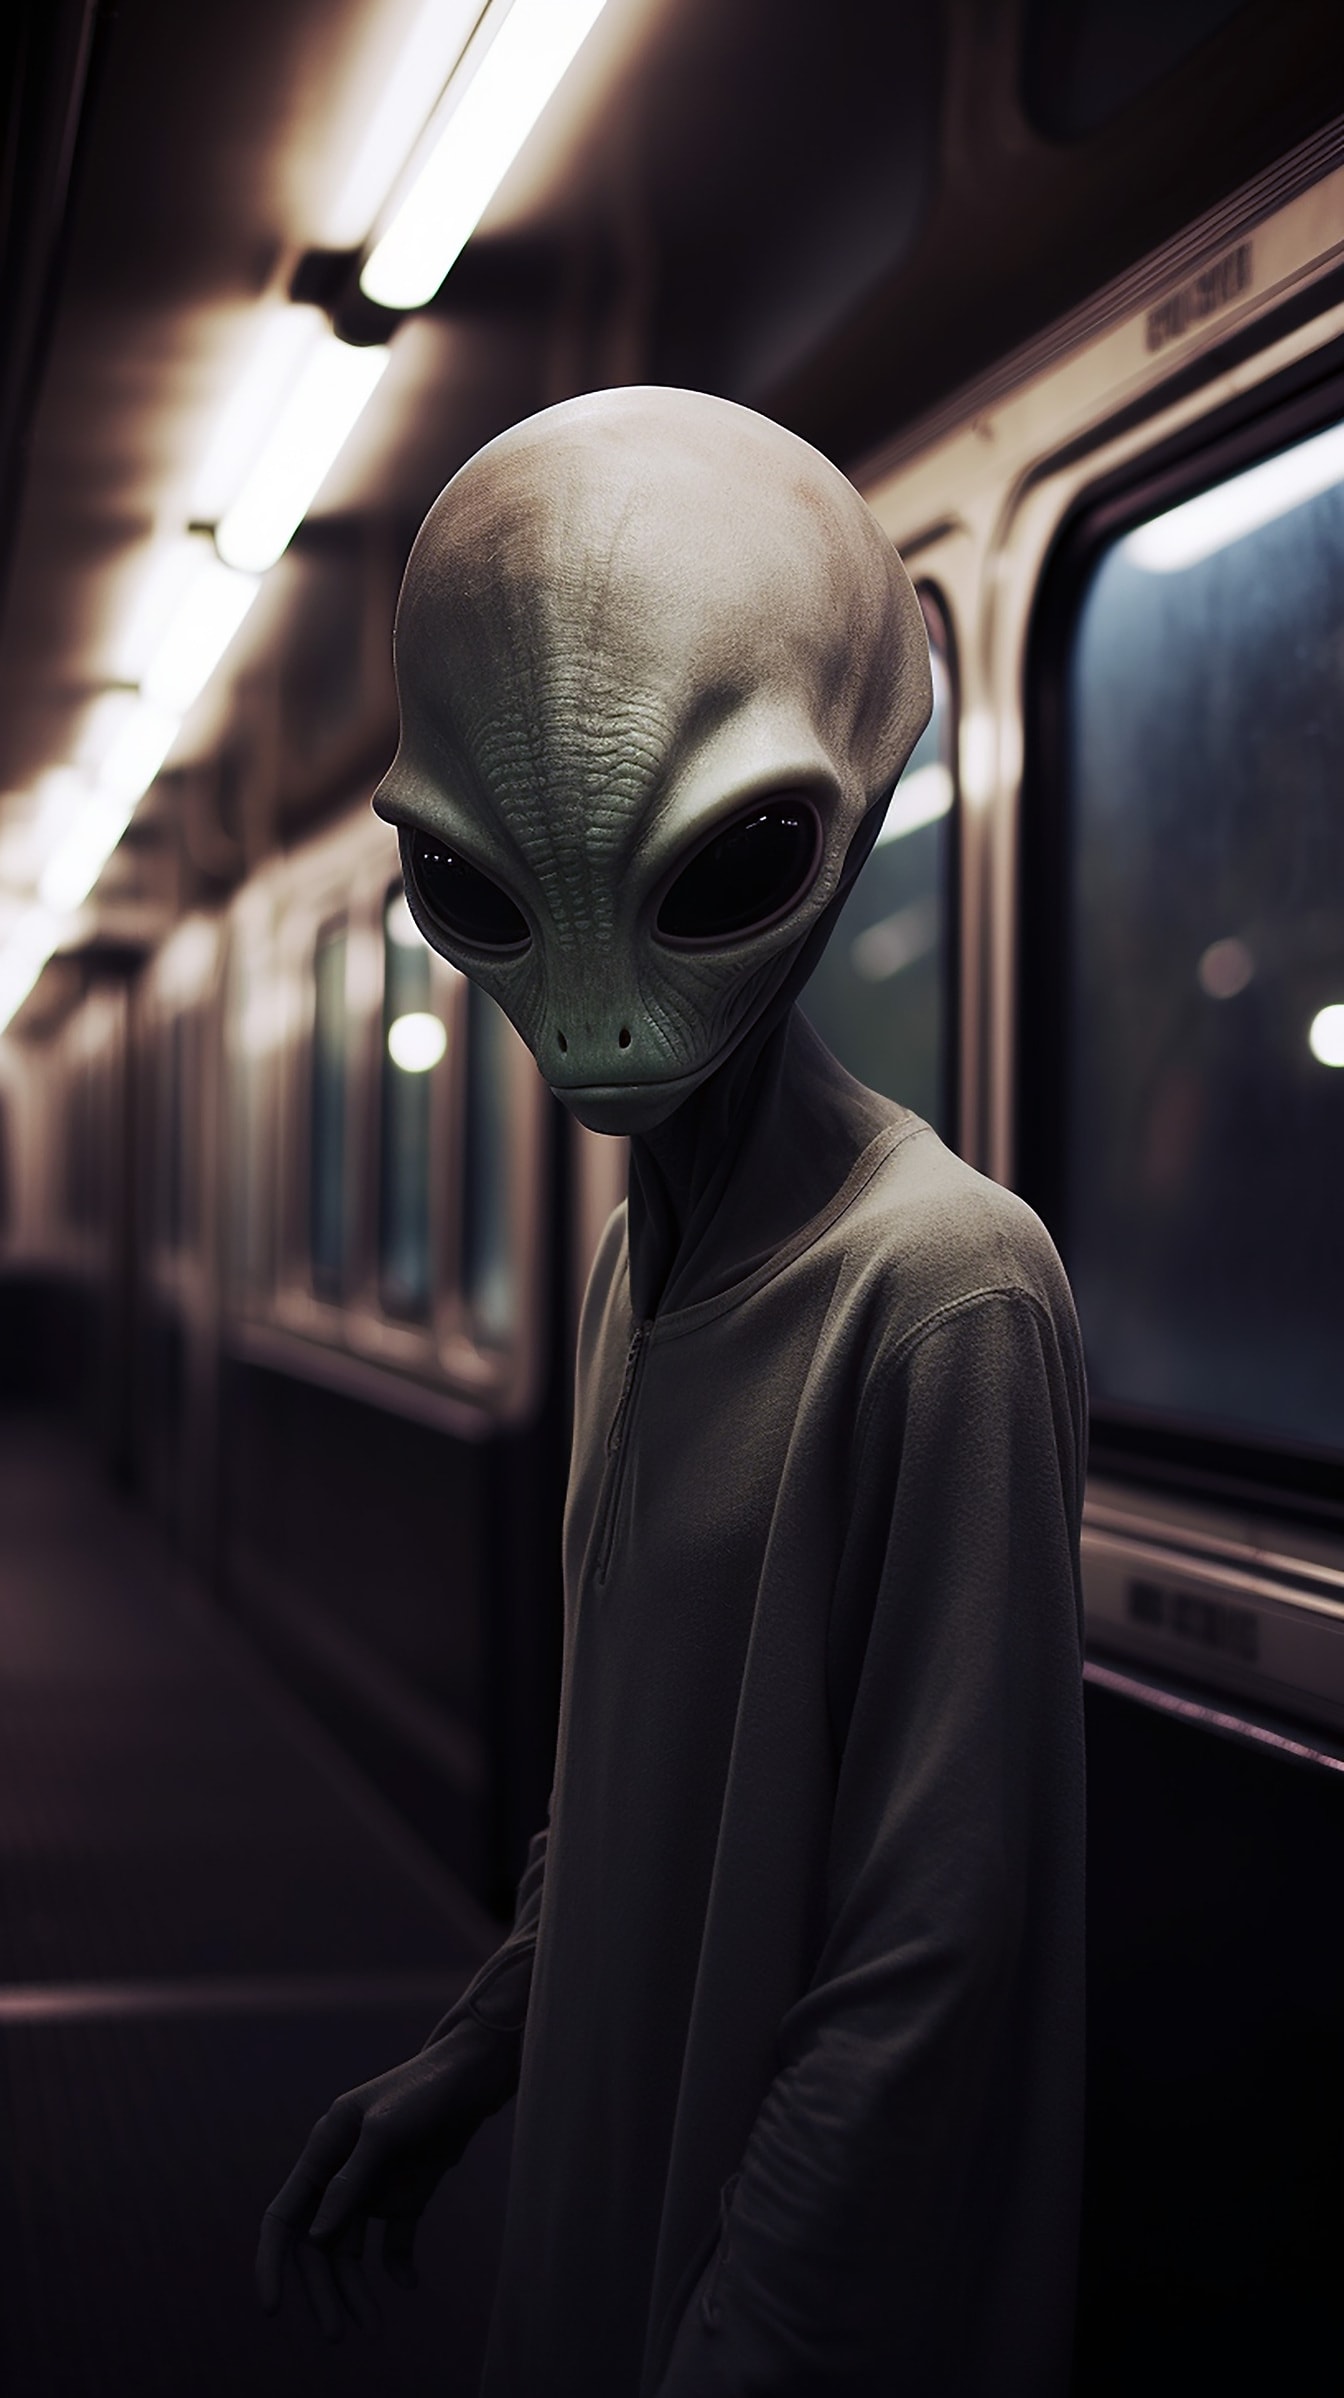 Інопланетна істота з великими очима в поїзді на станції метро